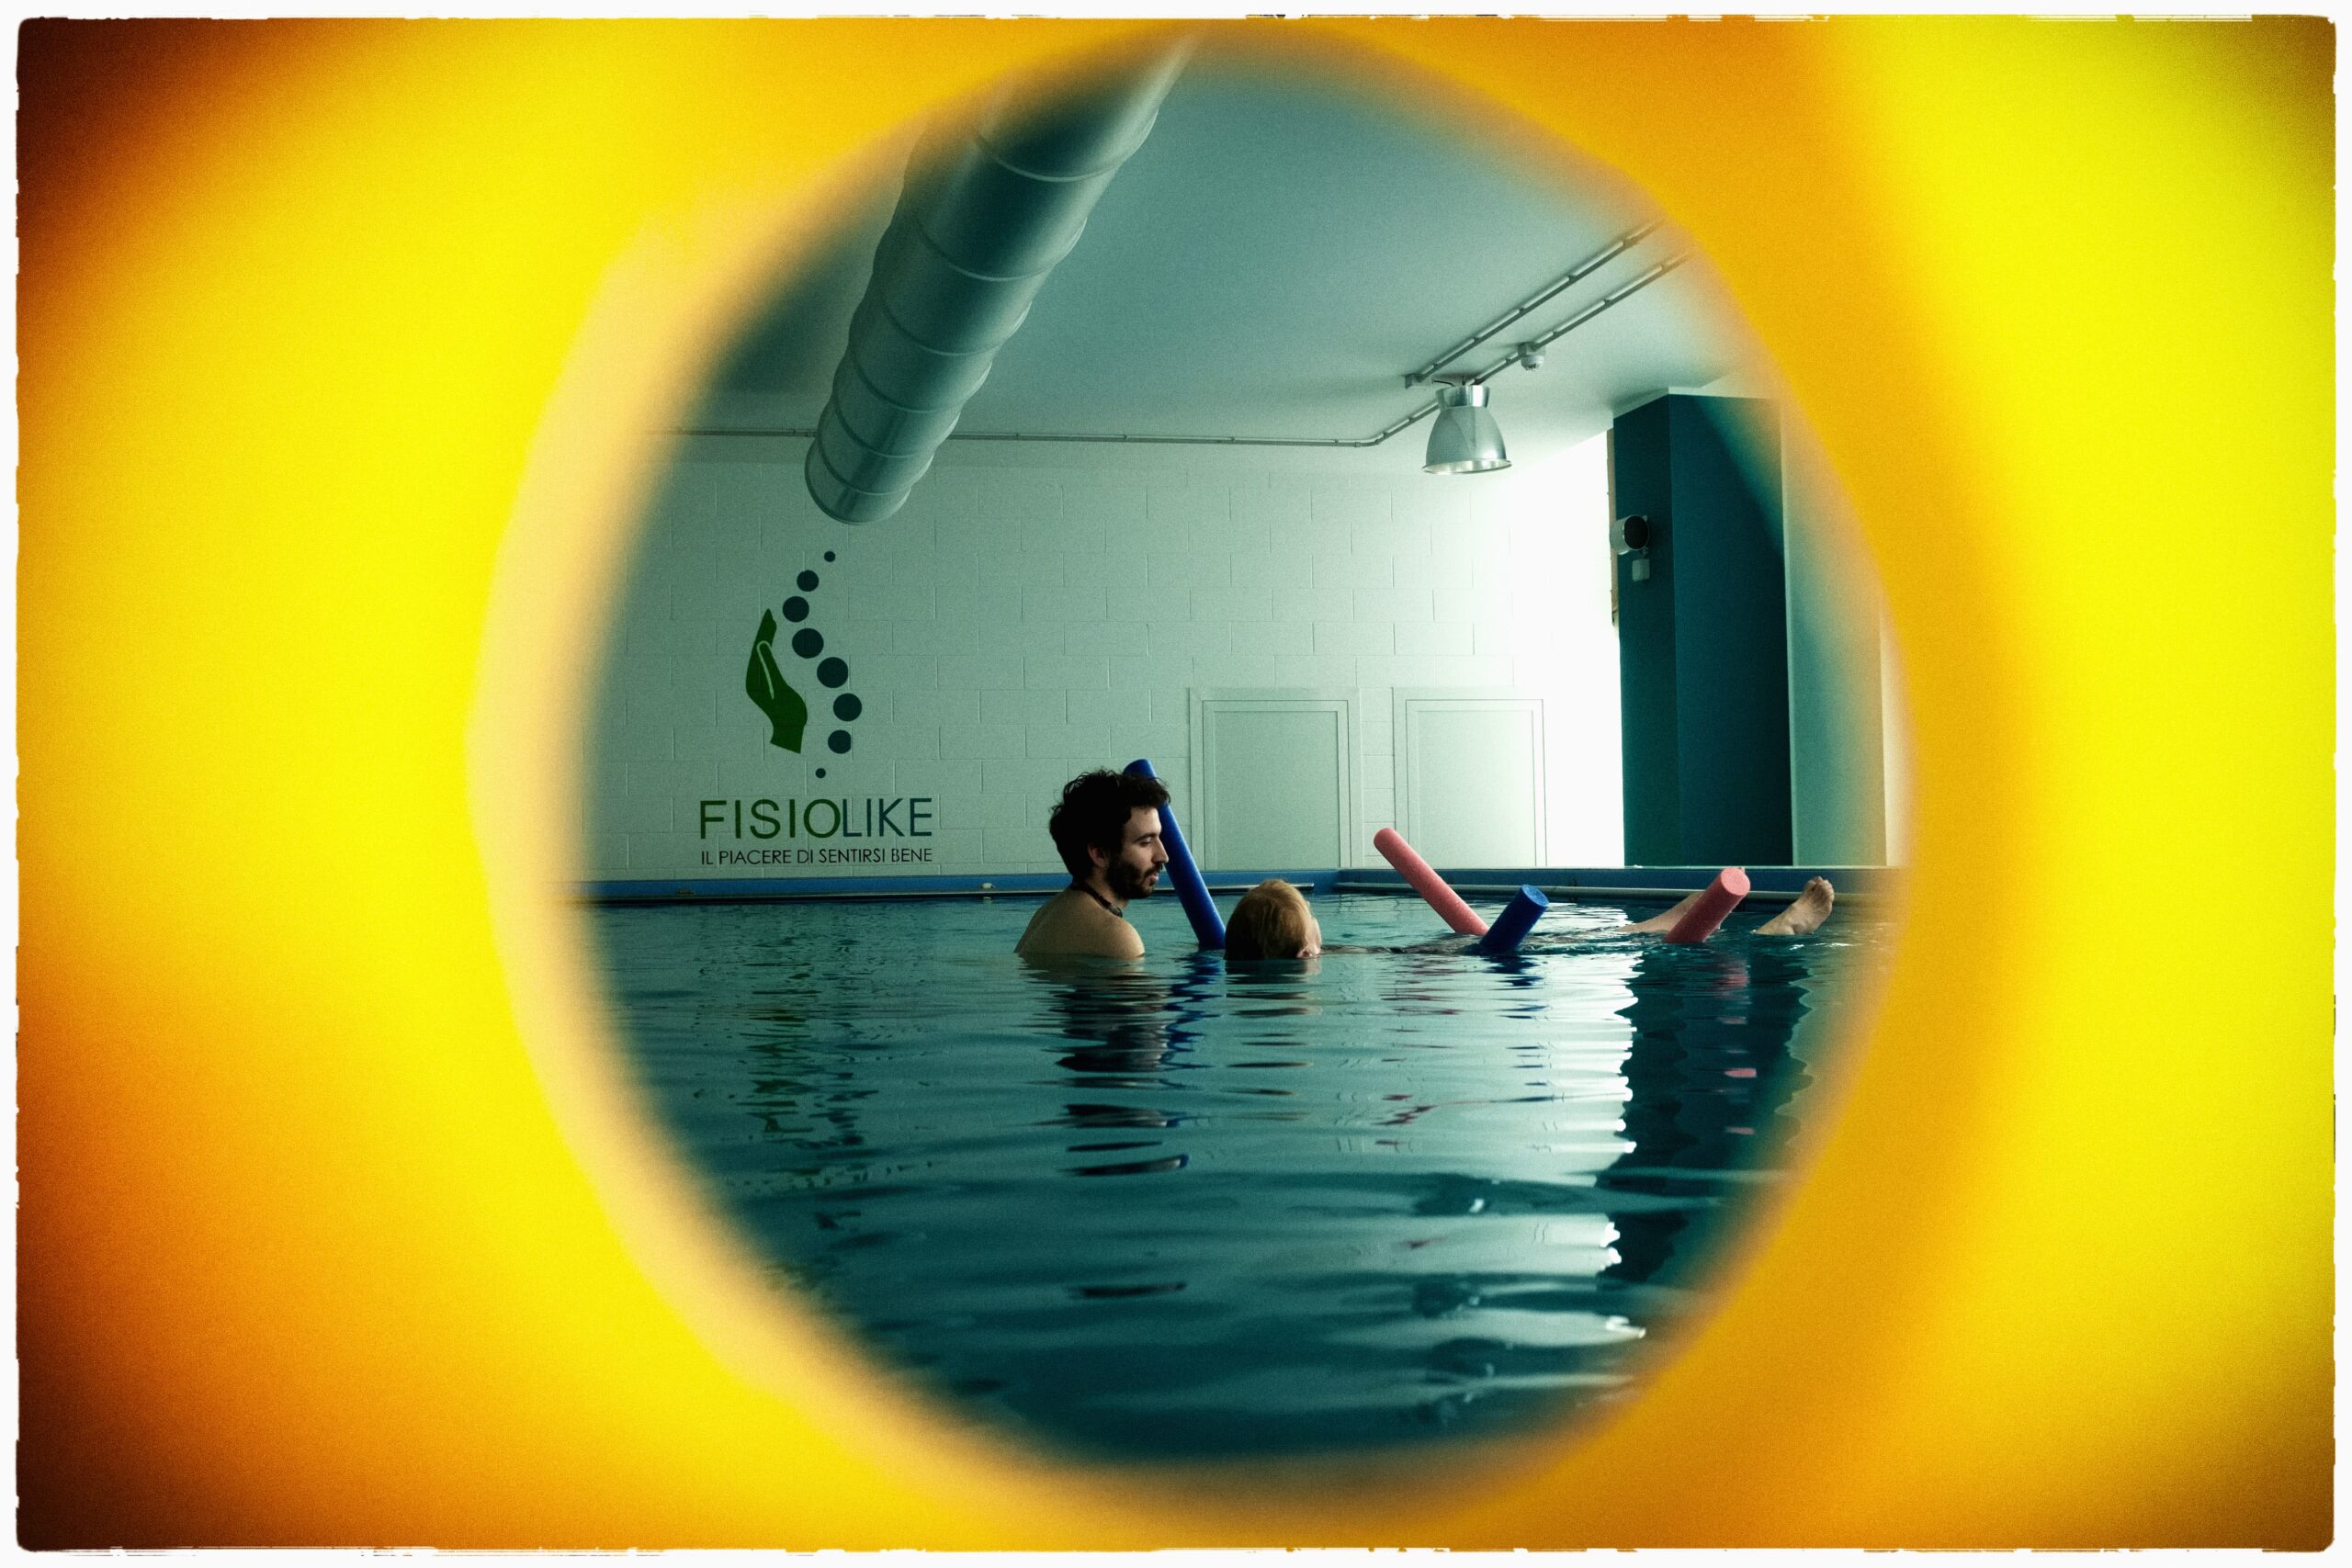 piscina riabilitativa fisiolike